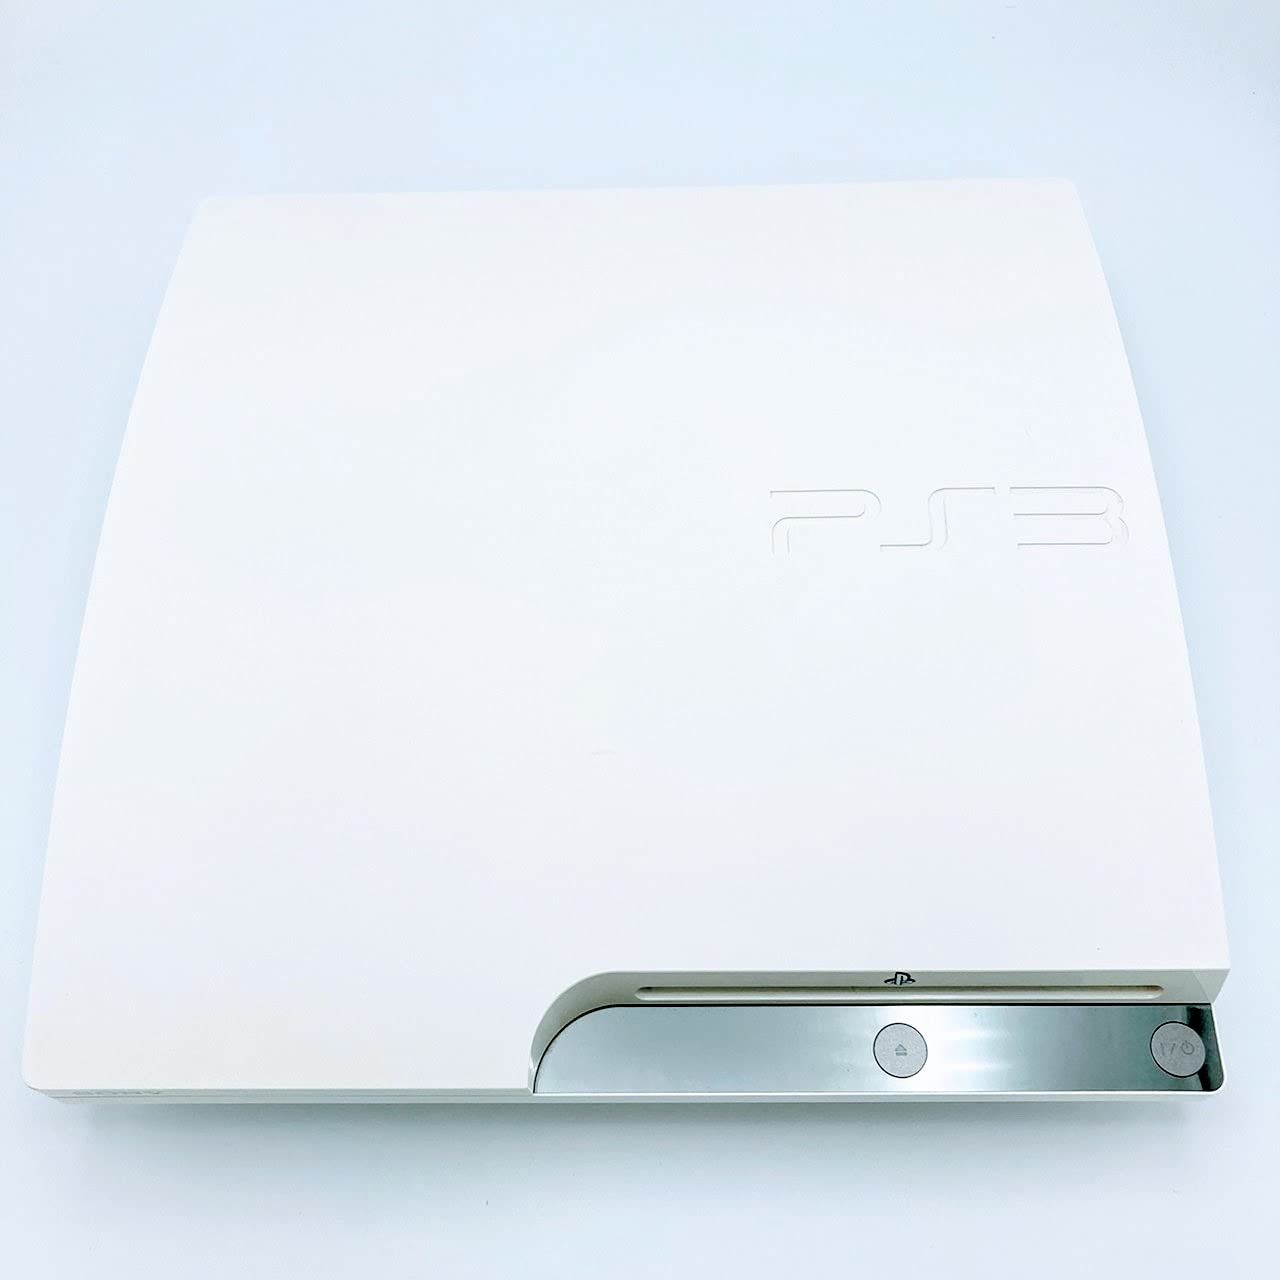 中古 箱付 完品 SONY ソニー プレイステーション PlayStation 3 (320GB) クラシック・ホワイト (CECH-2500BLW)  - メルカリ